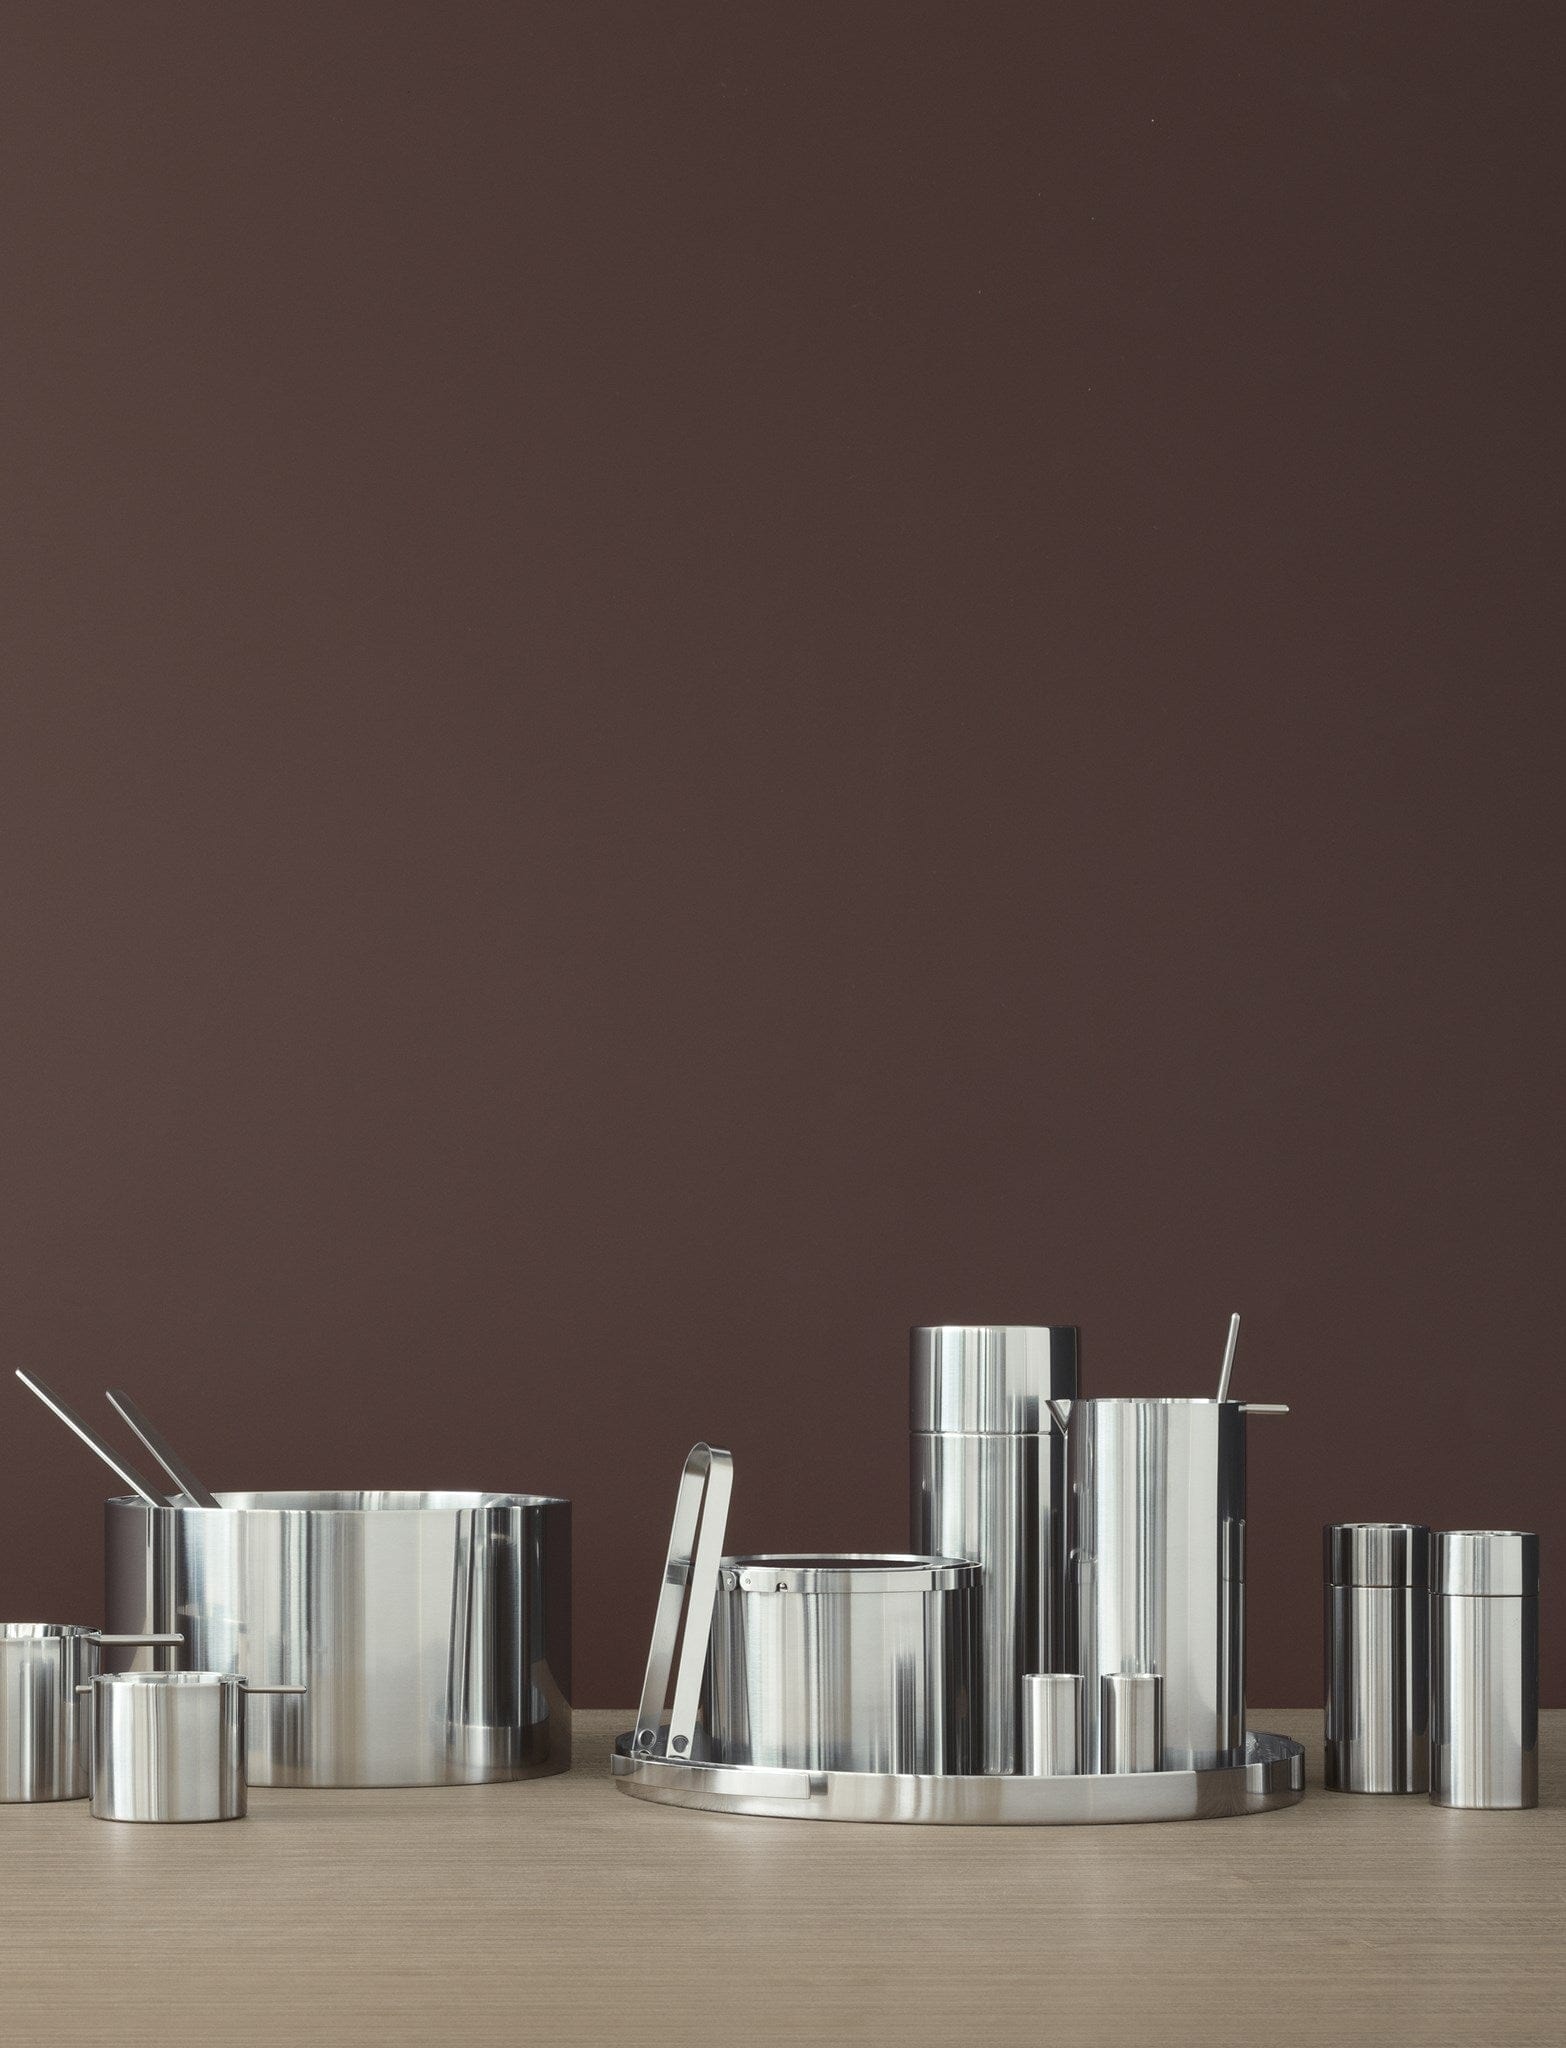 Stelton Arne Jacobsen Sale/Pepper Shaker